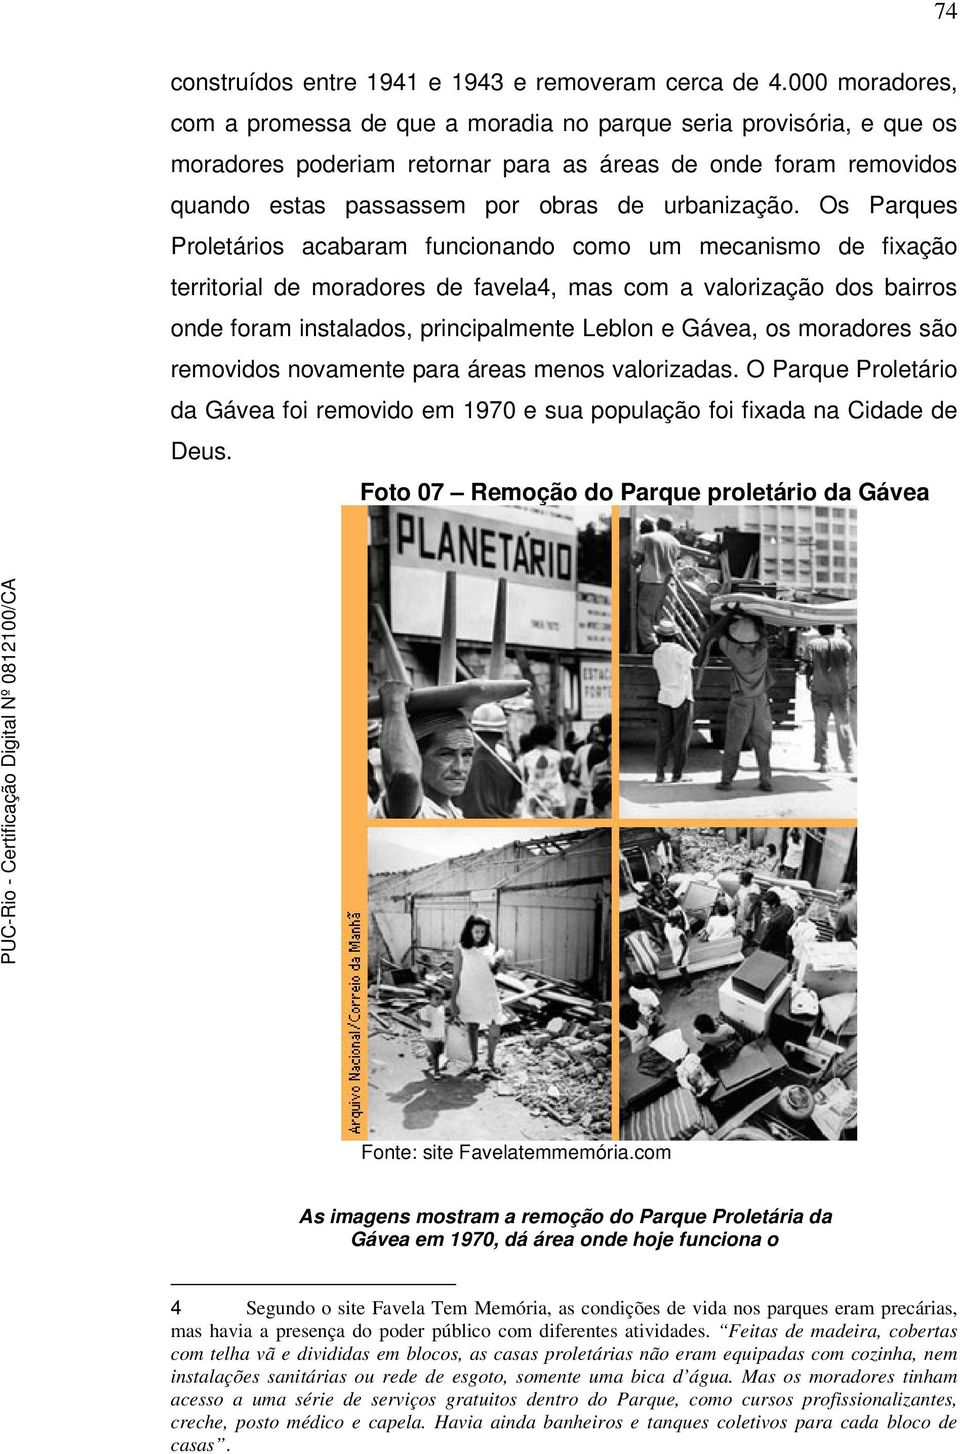 Os Parques Proletários acabaram funcionando como um mecanismo de fixação territorial de moradores de favela4, mas com a valorização dos bairros onde foram instalados, principalmente Leblon e Gávea,